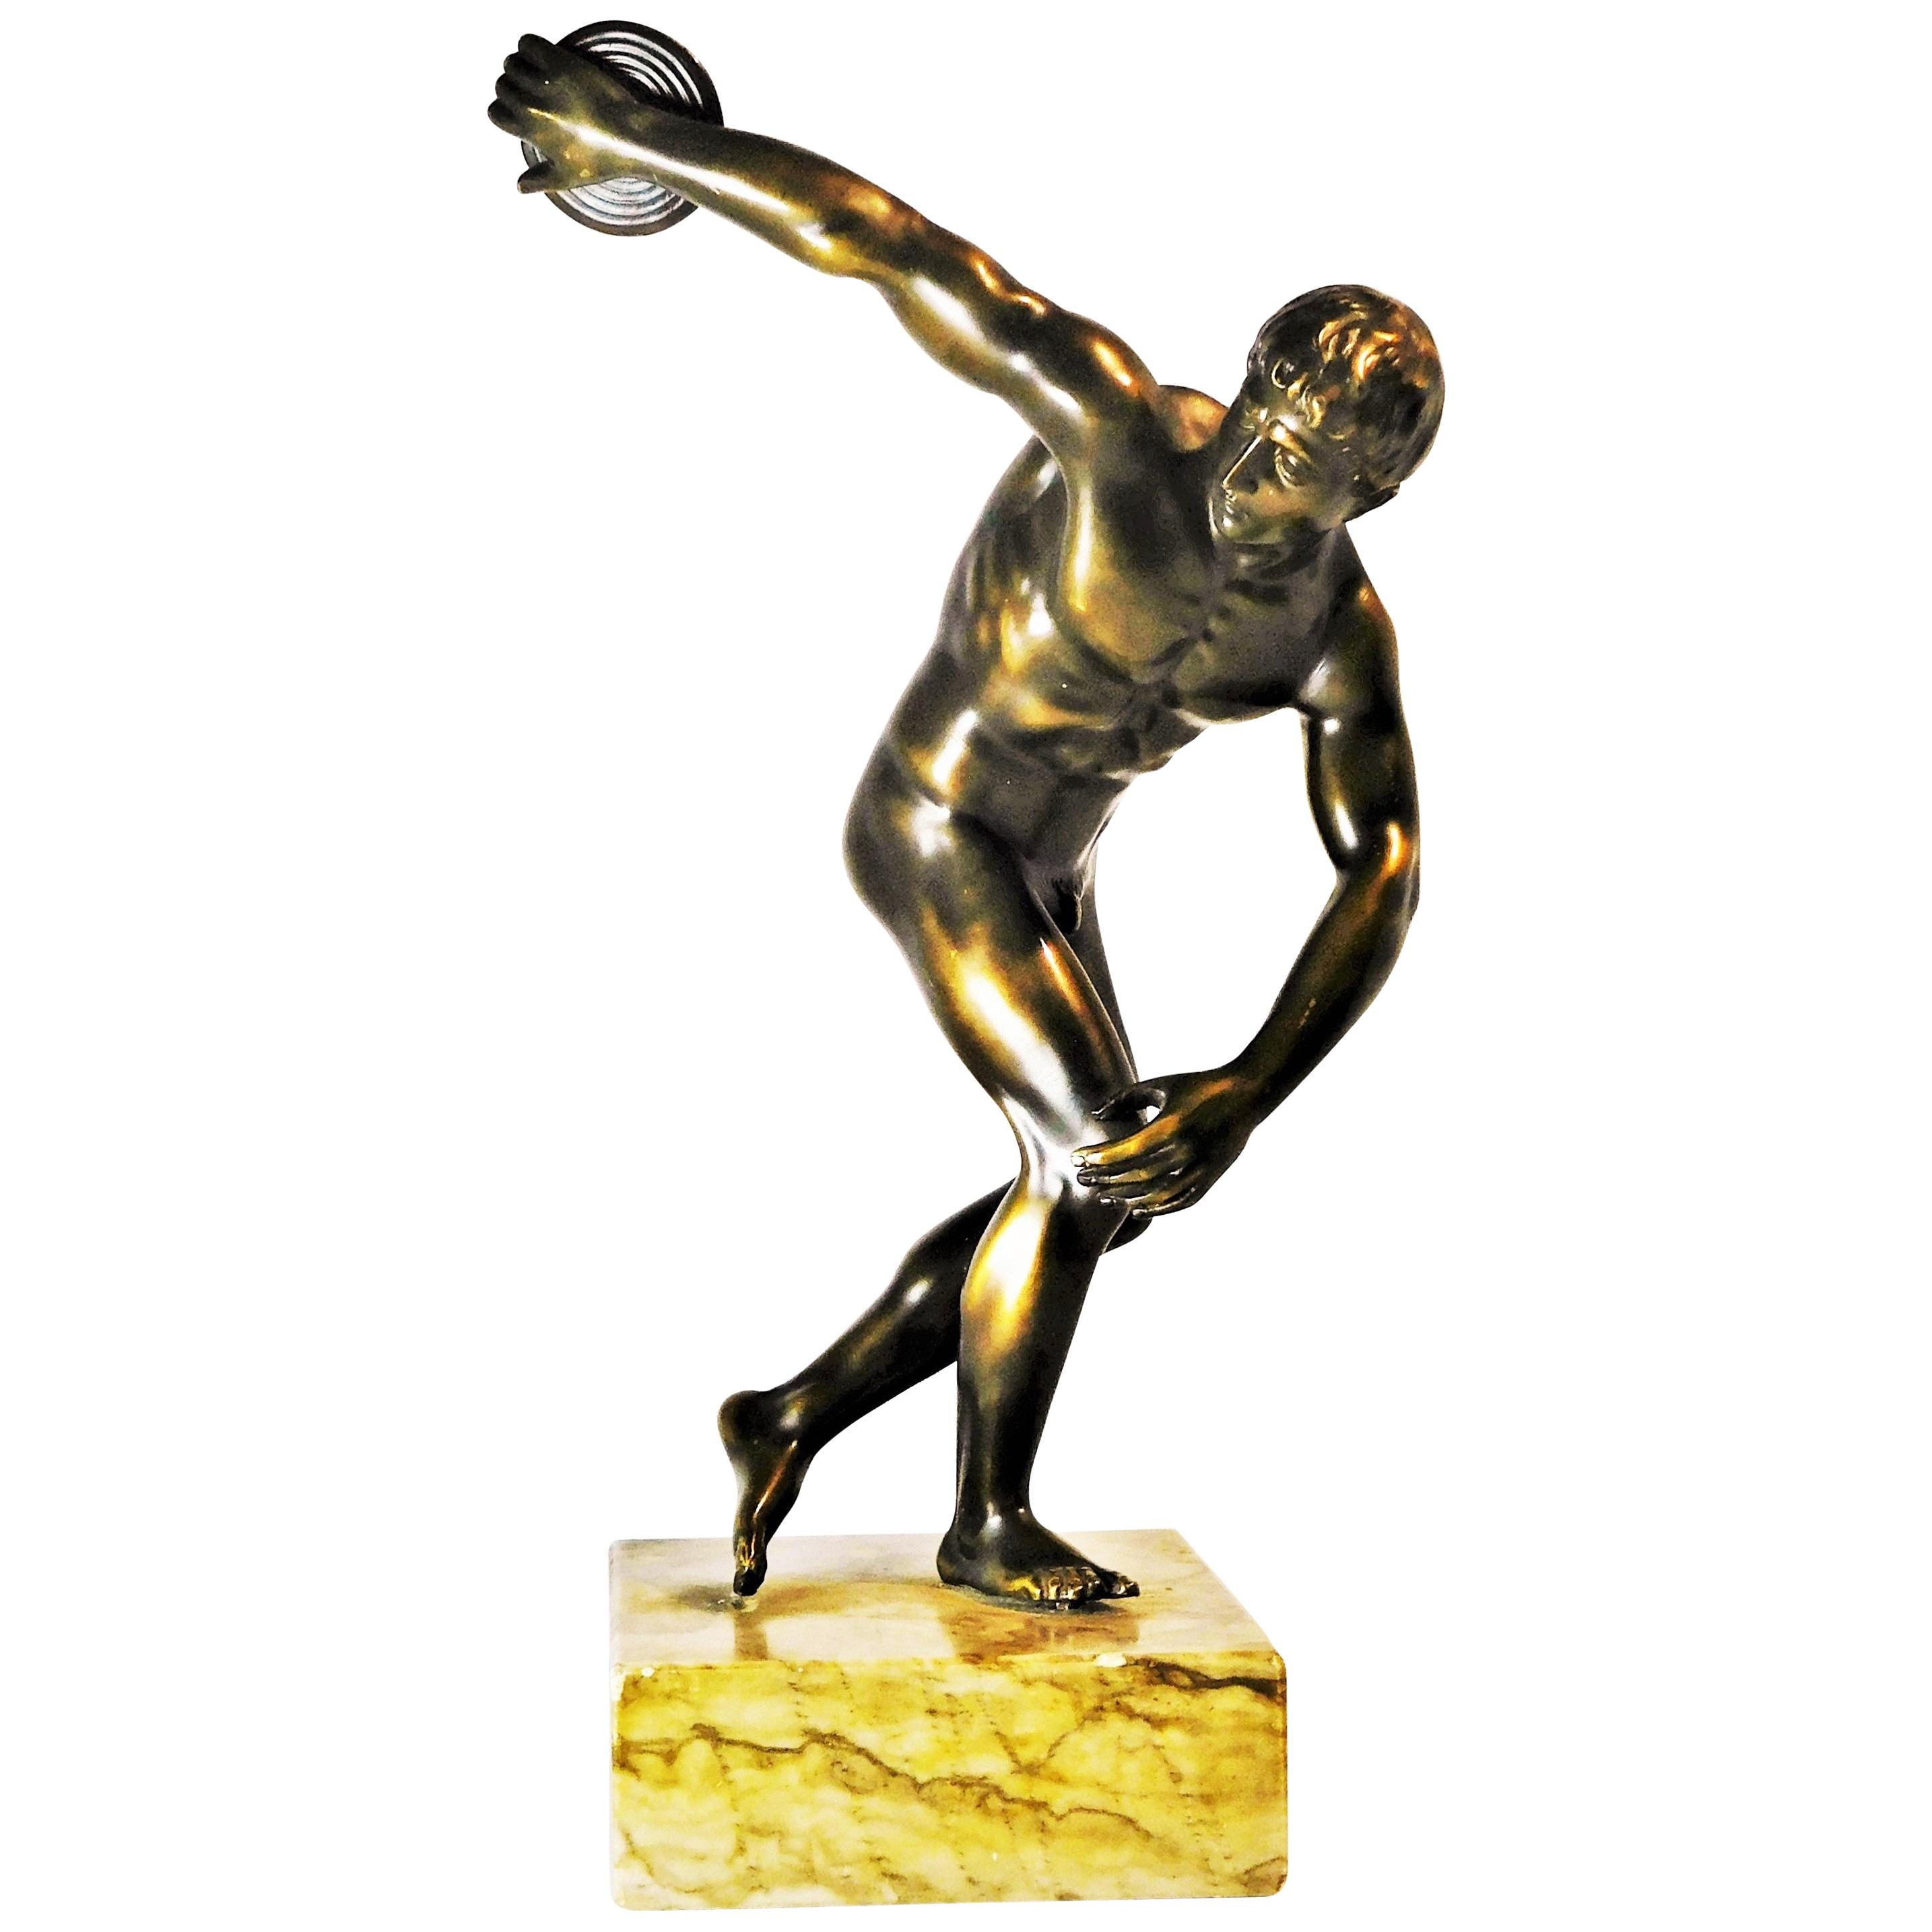 Grand Tour Souvenir Bronze Figure of Discobolus, After the Antique by Myron For Sale